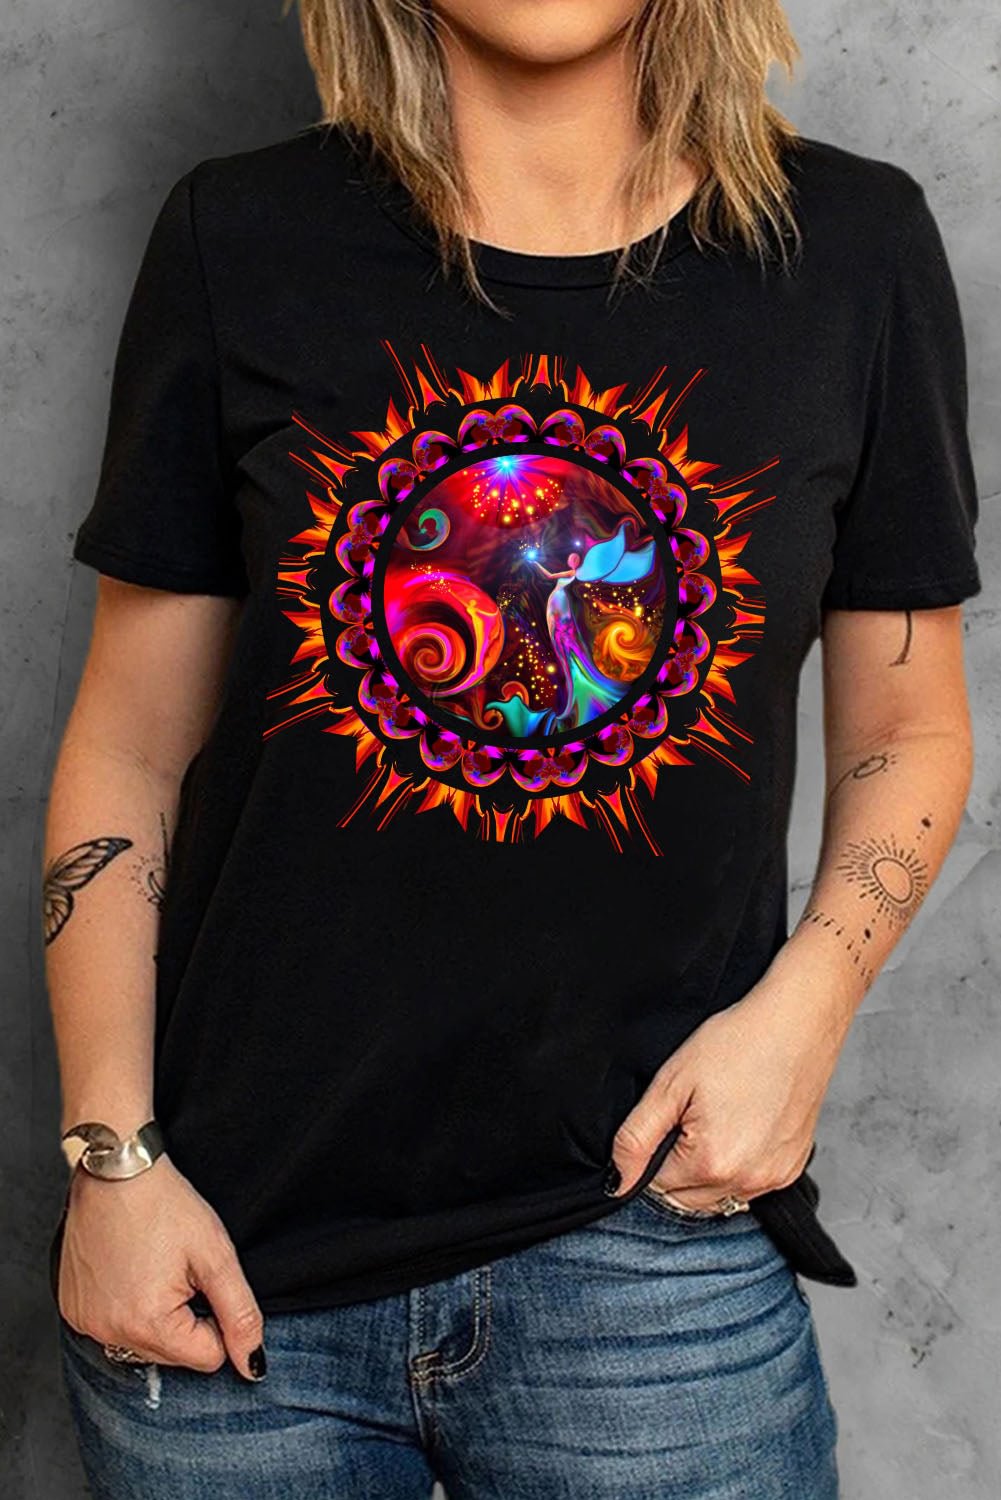 Angel Wings Reiki Phoenix Rising Universe Psychedelic Mandala Fairy Art Chakra T-Shirts